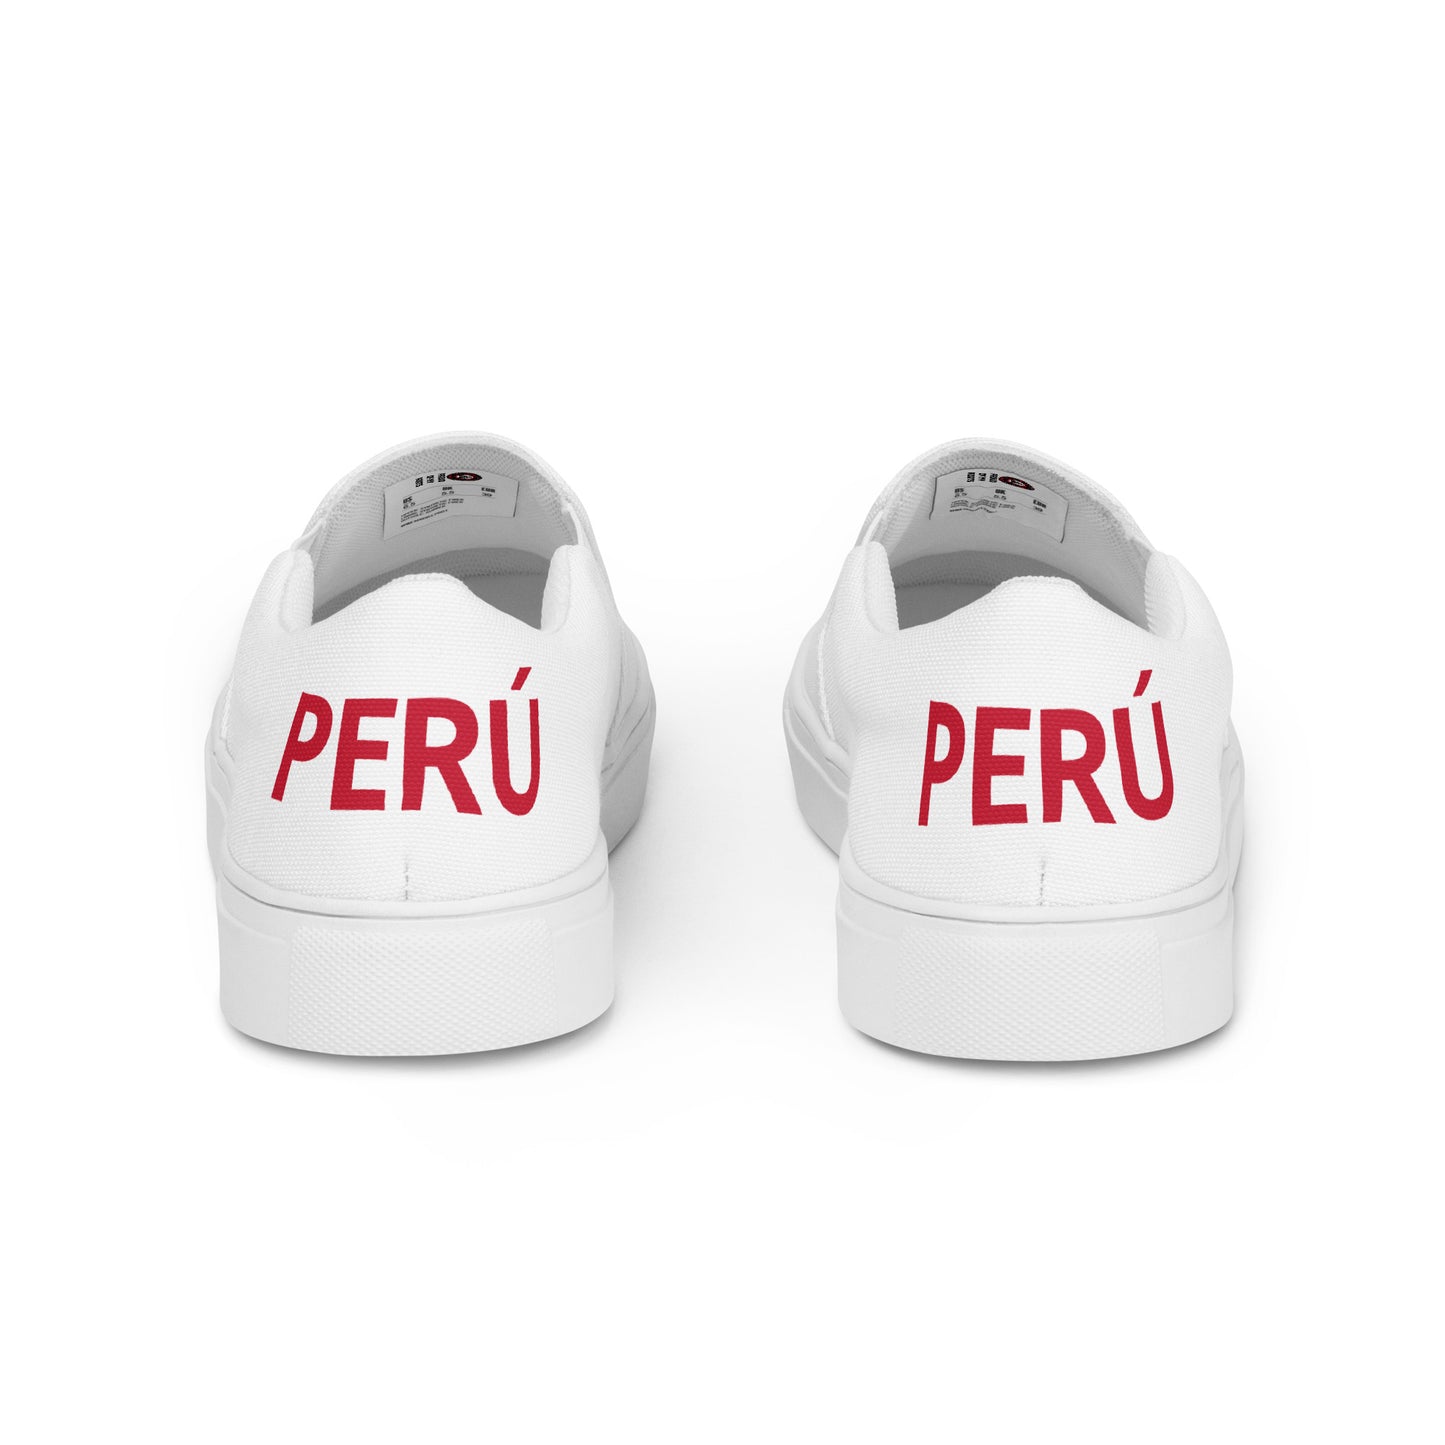 Perú - Women - White - Slip-on shoes